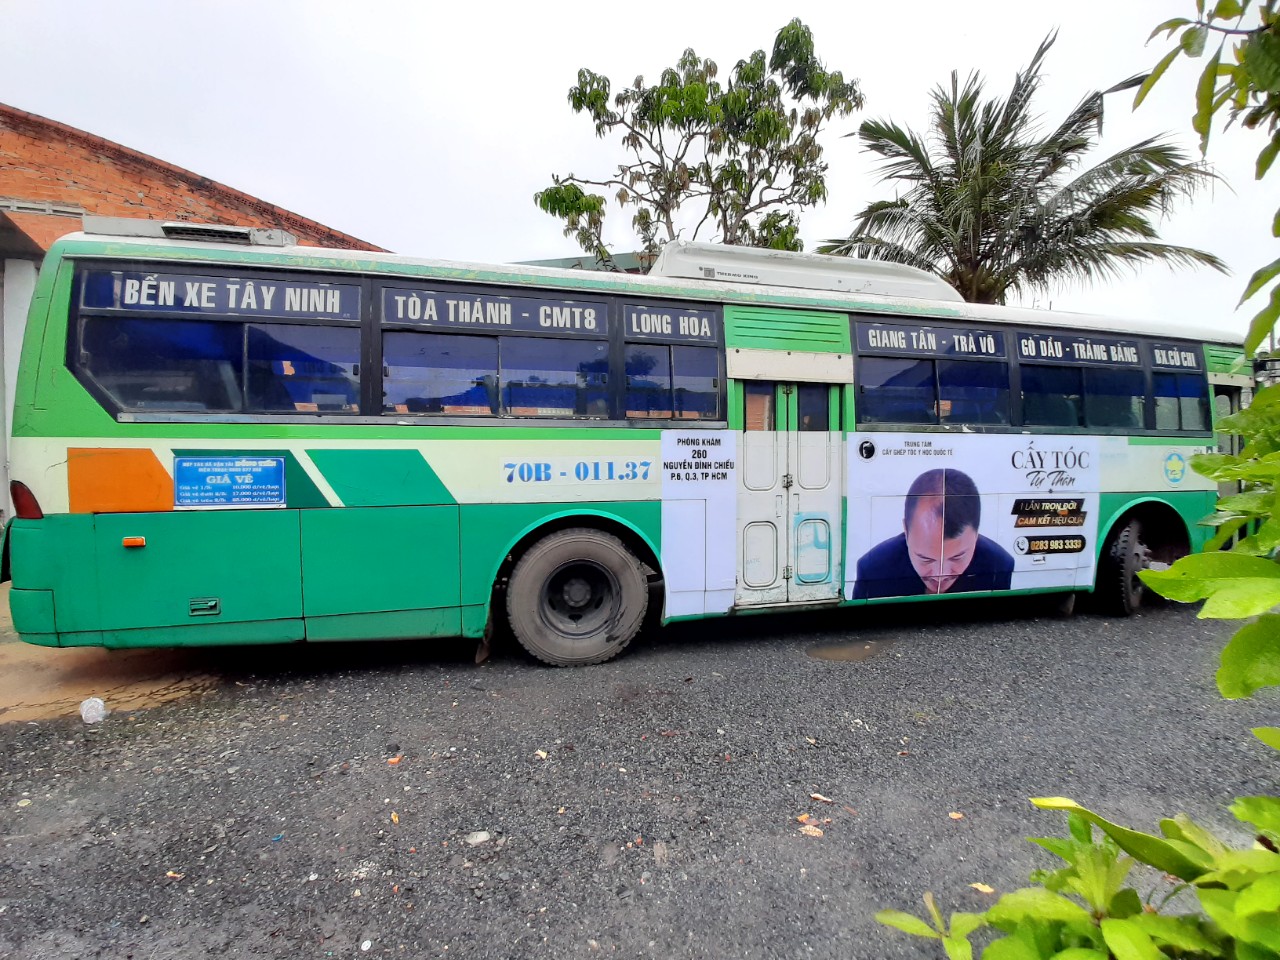 Quảng cáo xe bus tuyến 701 - Xe bus Hồ Chí Minh